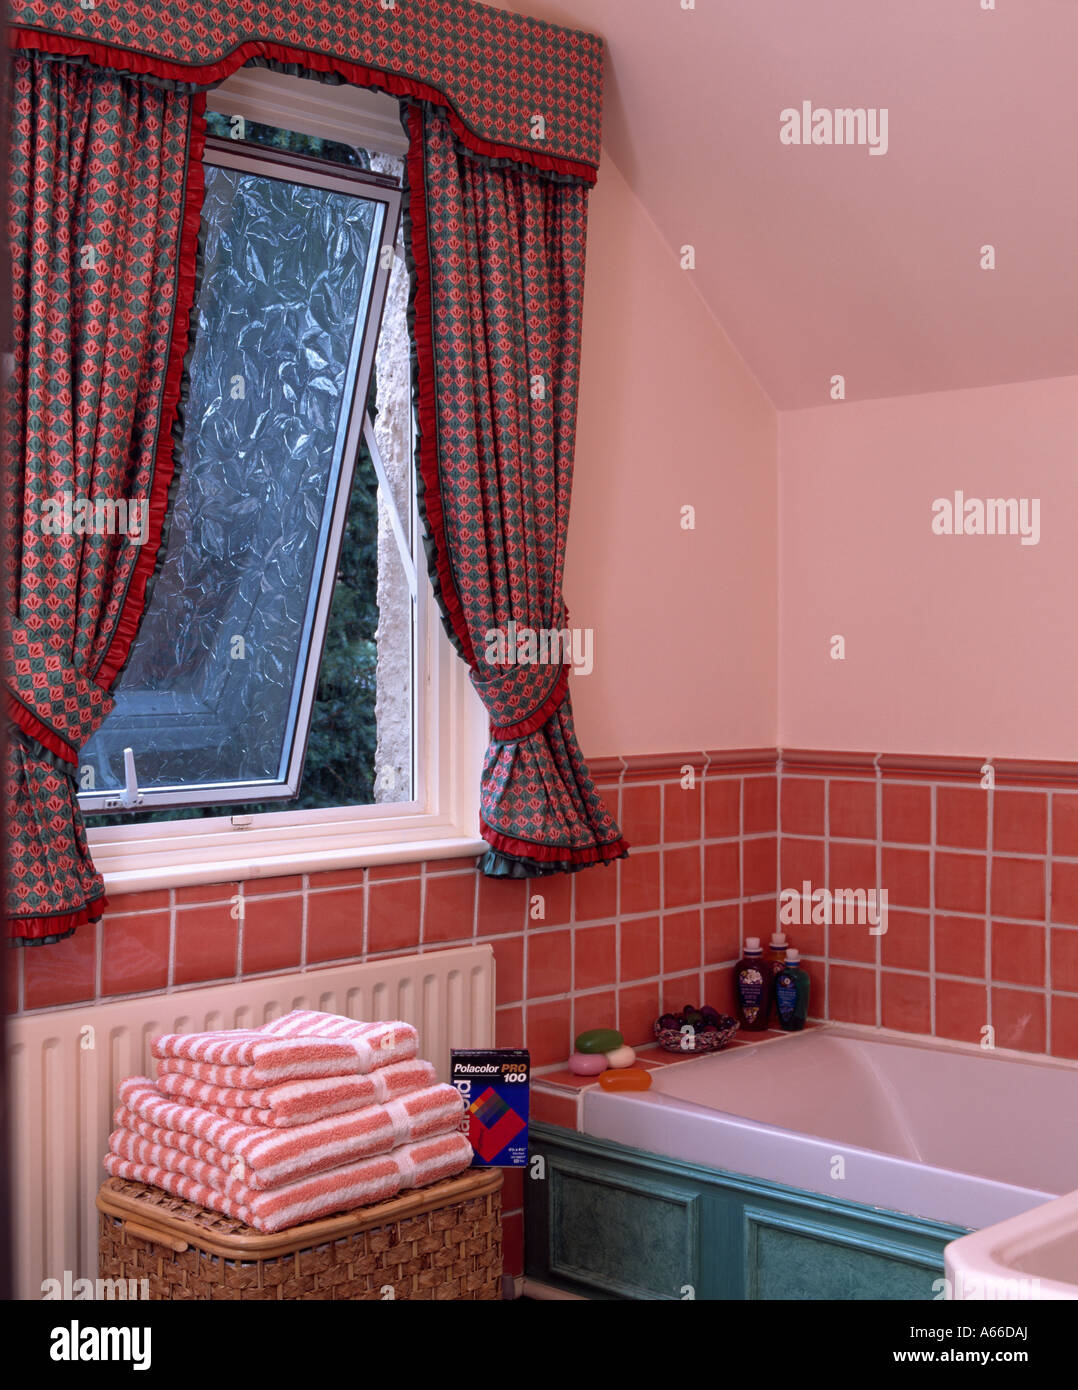 Aprire la finestra sopra il bagno con tegole rosse e surround e la pila di asciugamani rosa Foto Stock